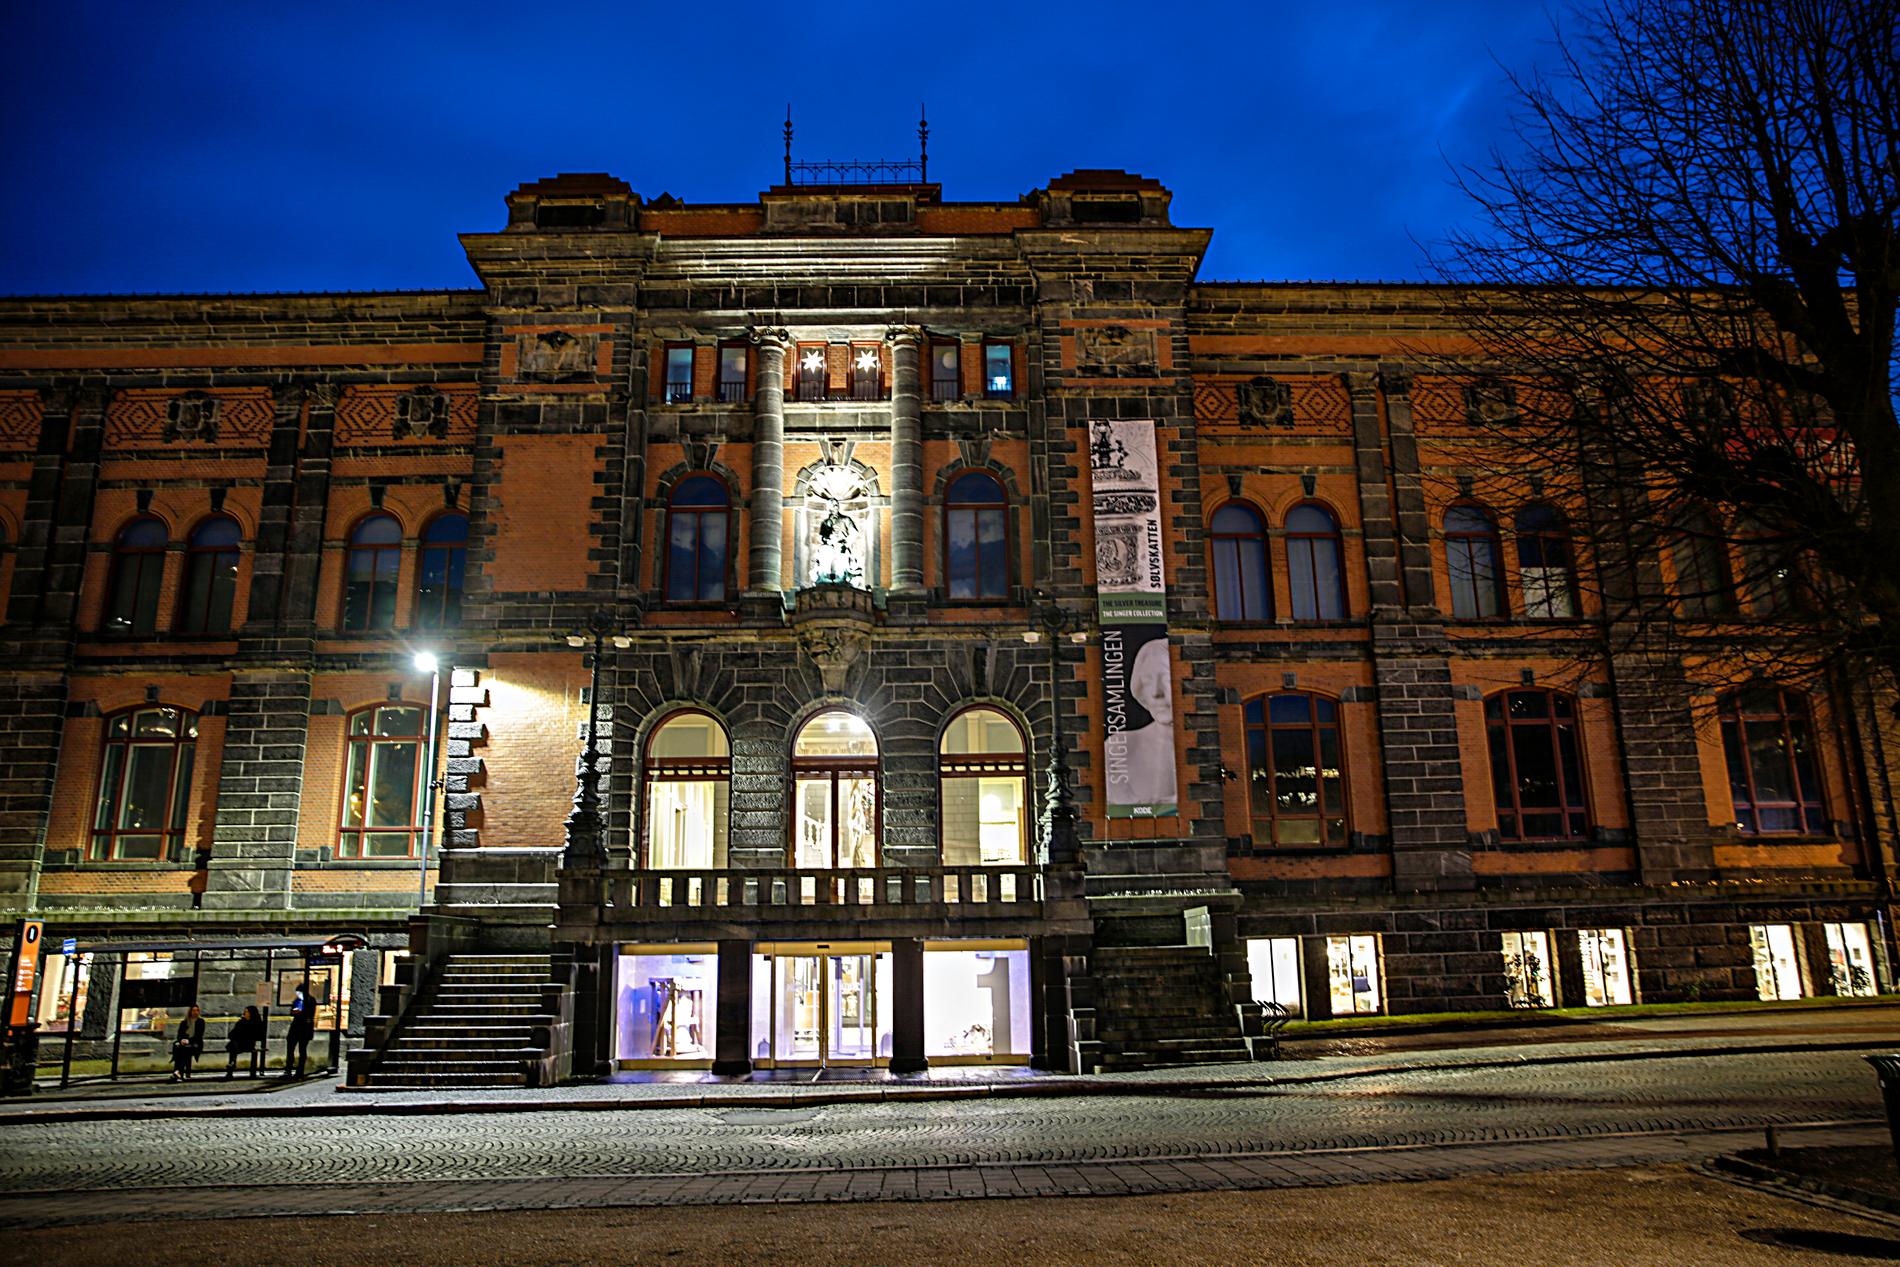  FORSKJELL: Musea i Oslo får tre gonger så mykje statsstøtte pr. gjest som musea i Hordaland, skriv innsendaren.  Biletet er frå museet Kode 1, også kjent som Permanenten.